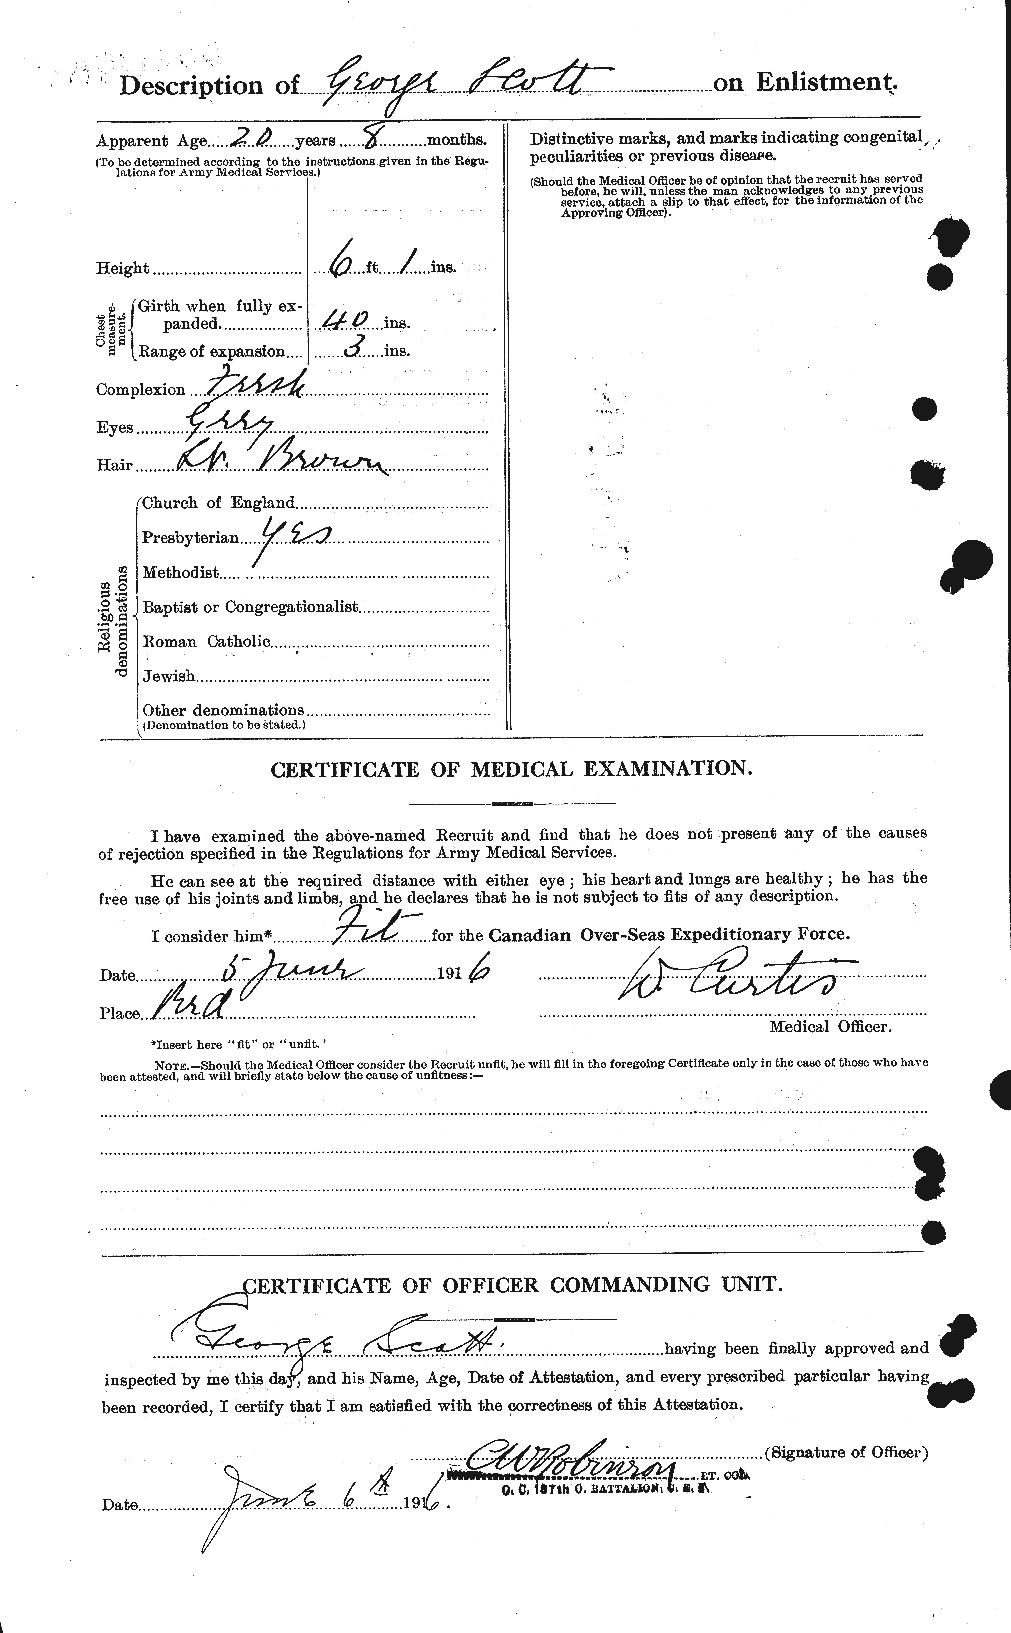 Dossiers du Personnel de la Première Guerre mondiale - CEC 084348b